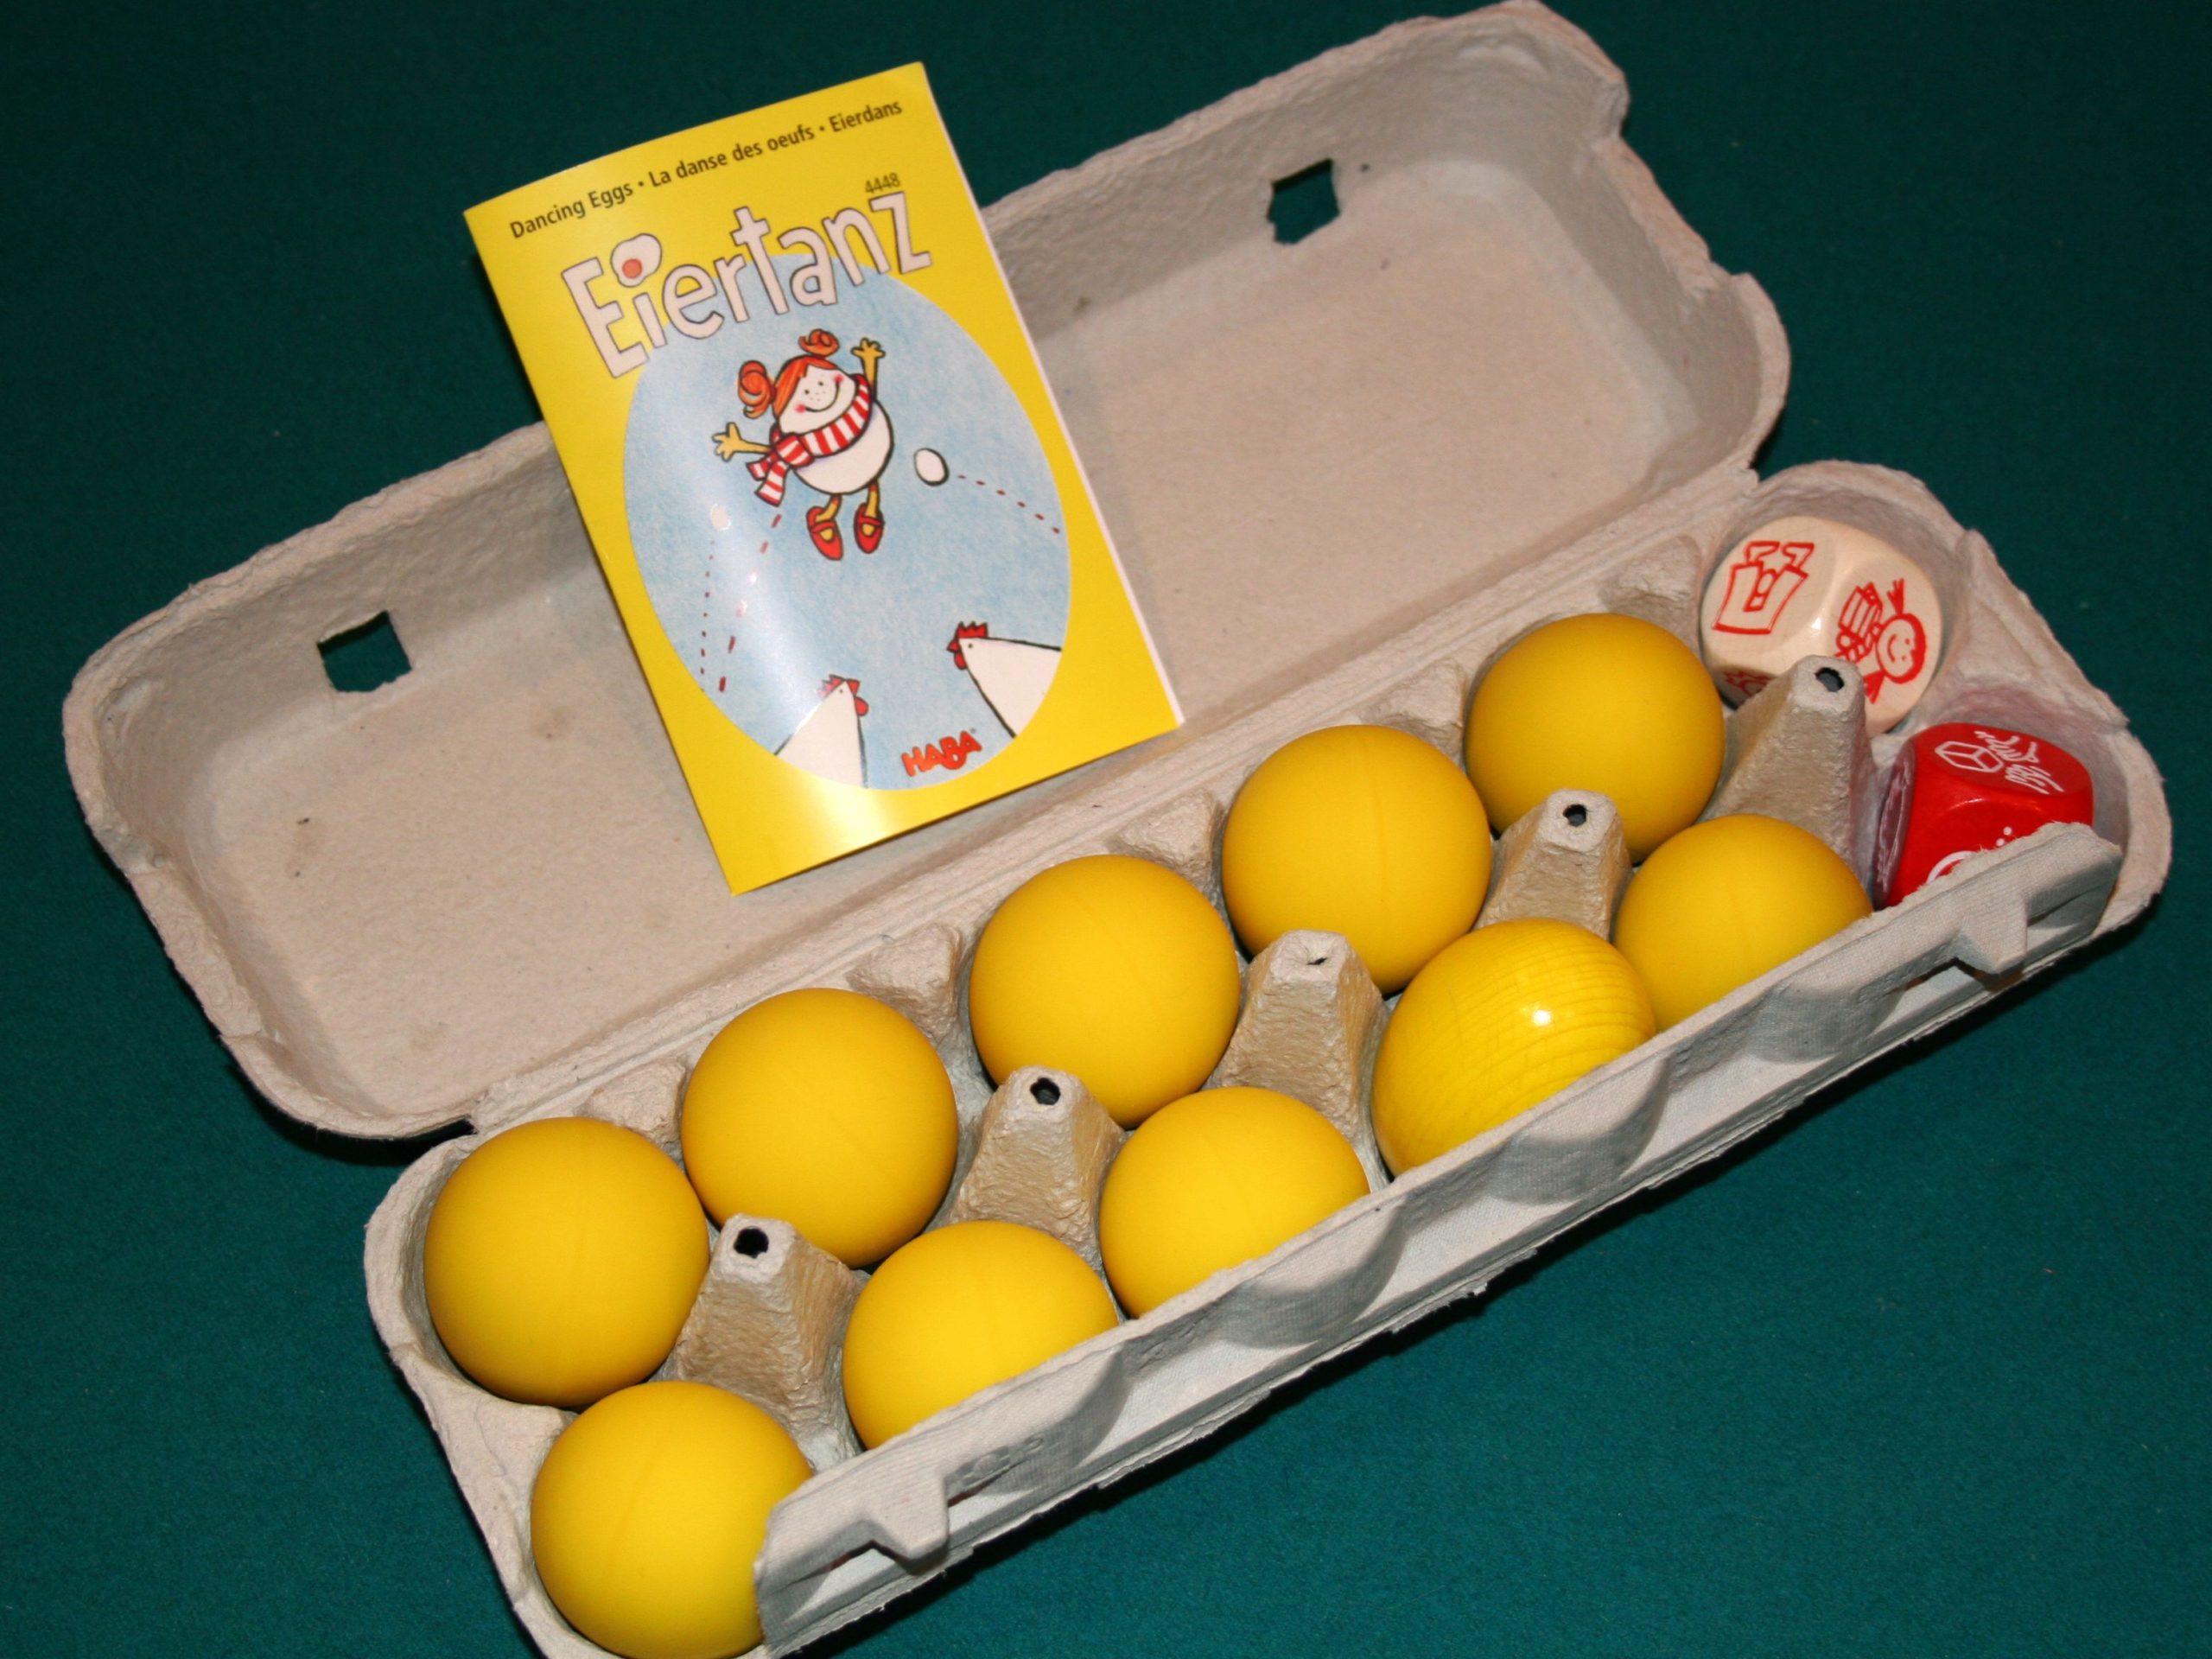 Играть яйца 5. Игра Egg. Игровые яйца. Игрушка в яйце, 15х8х5 см. Музыкальные яйца haba.